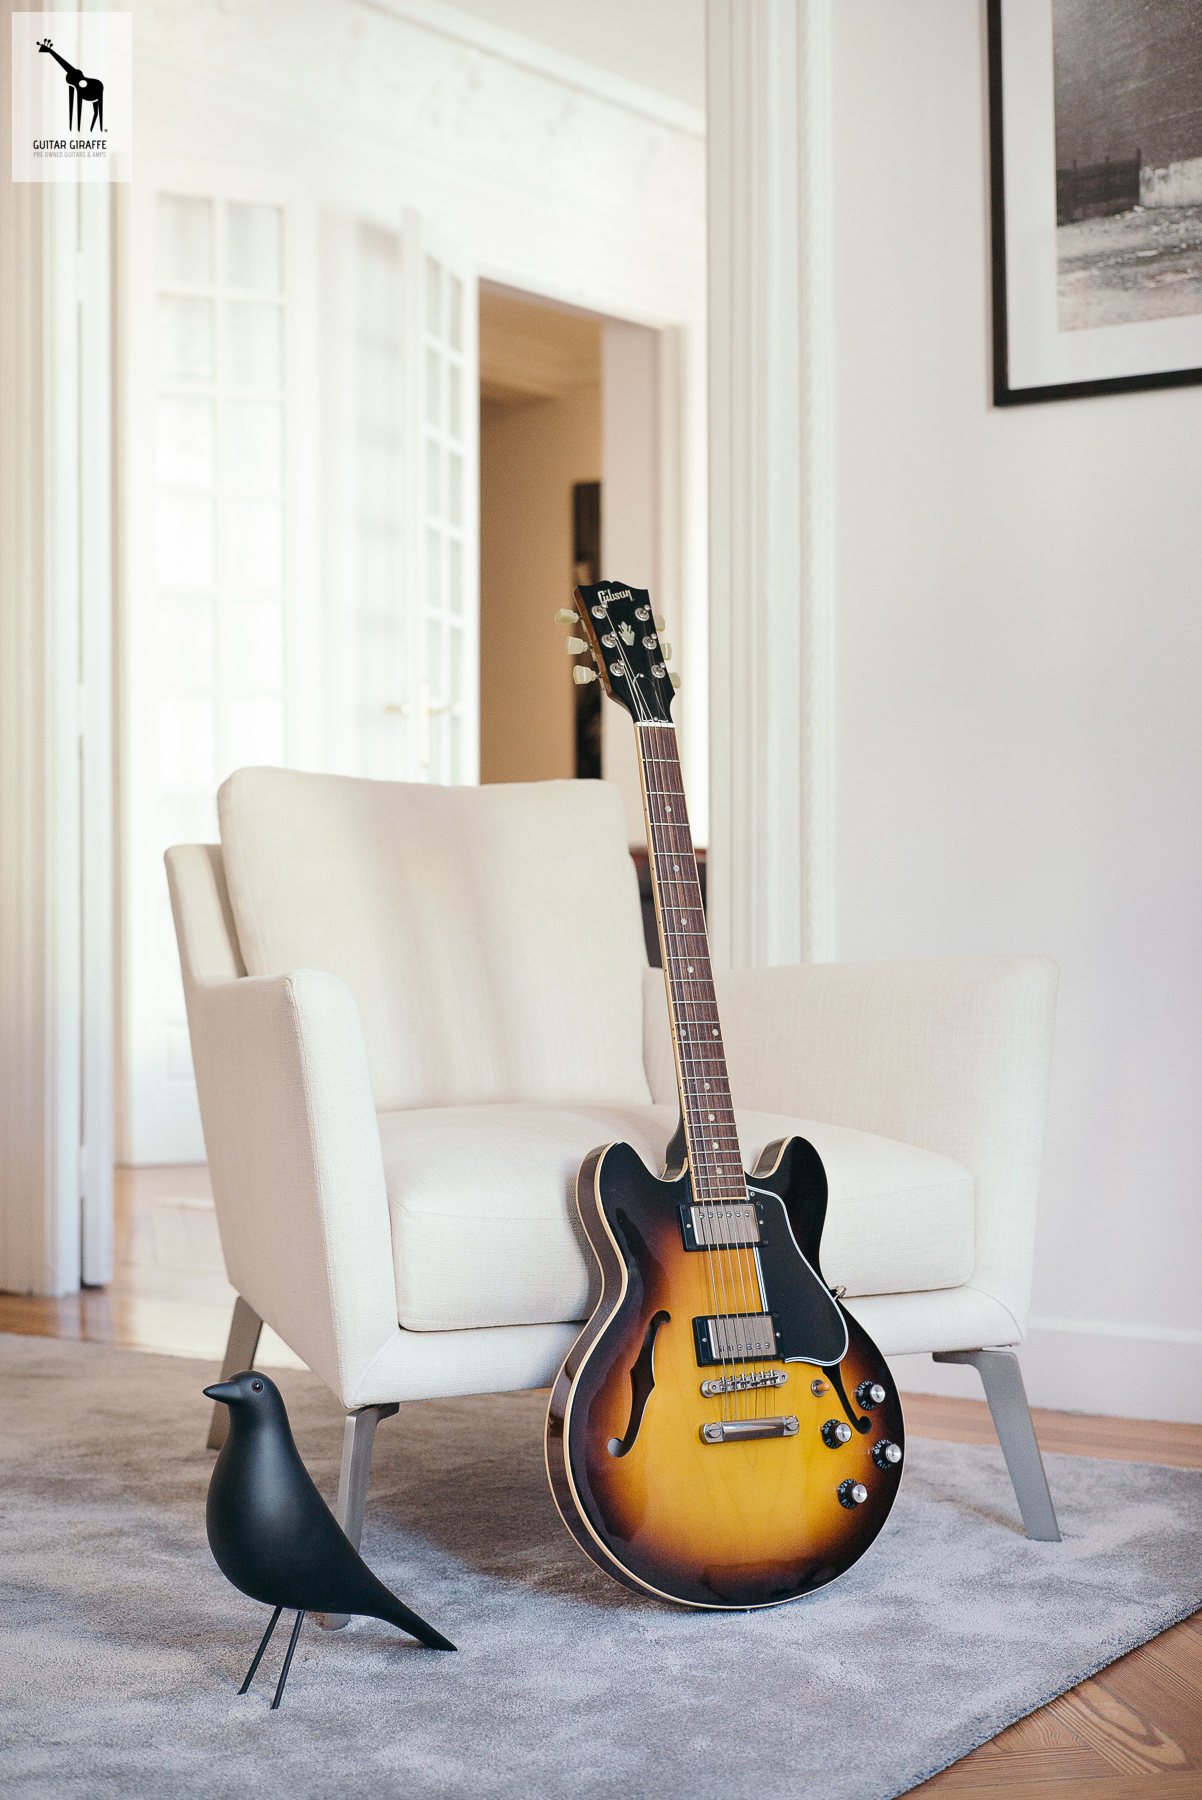 Gibson ES 339 Custom Shop 2012 Vintage Sunburst Guitar For Sale Guitar ...